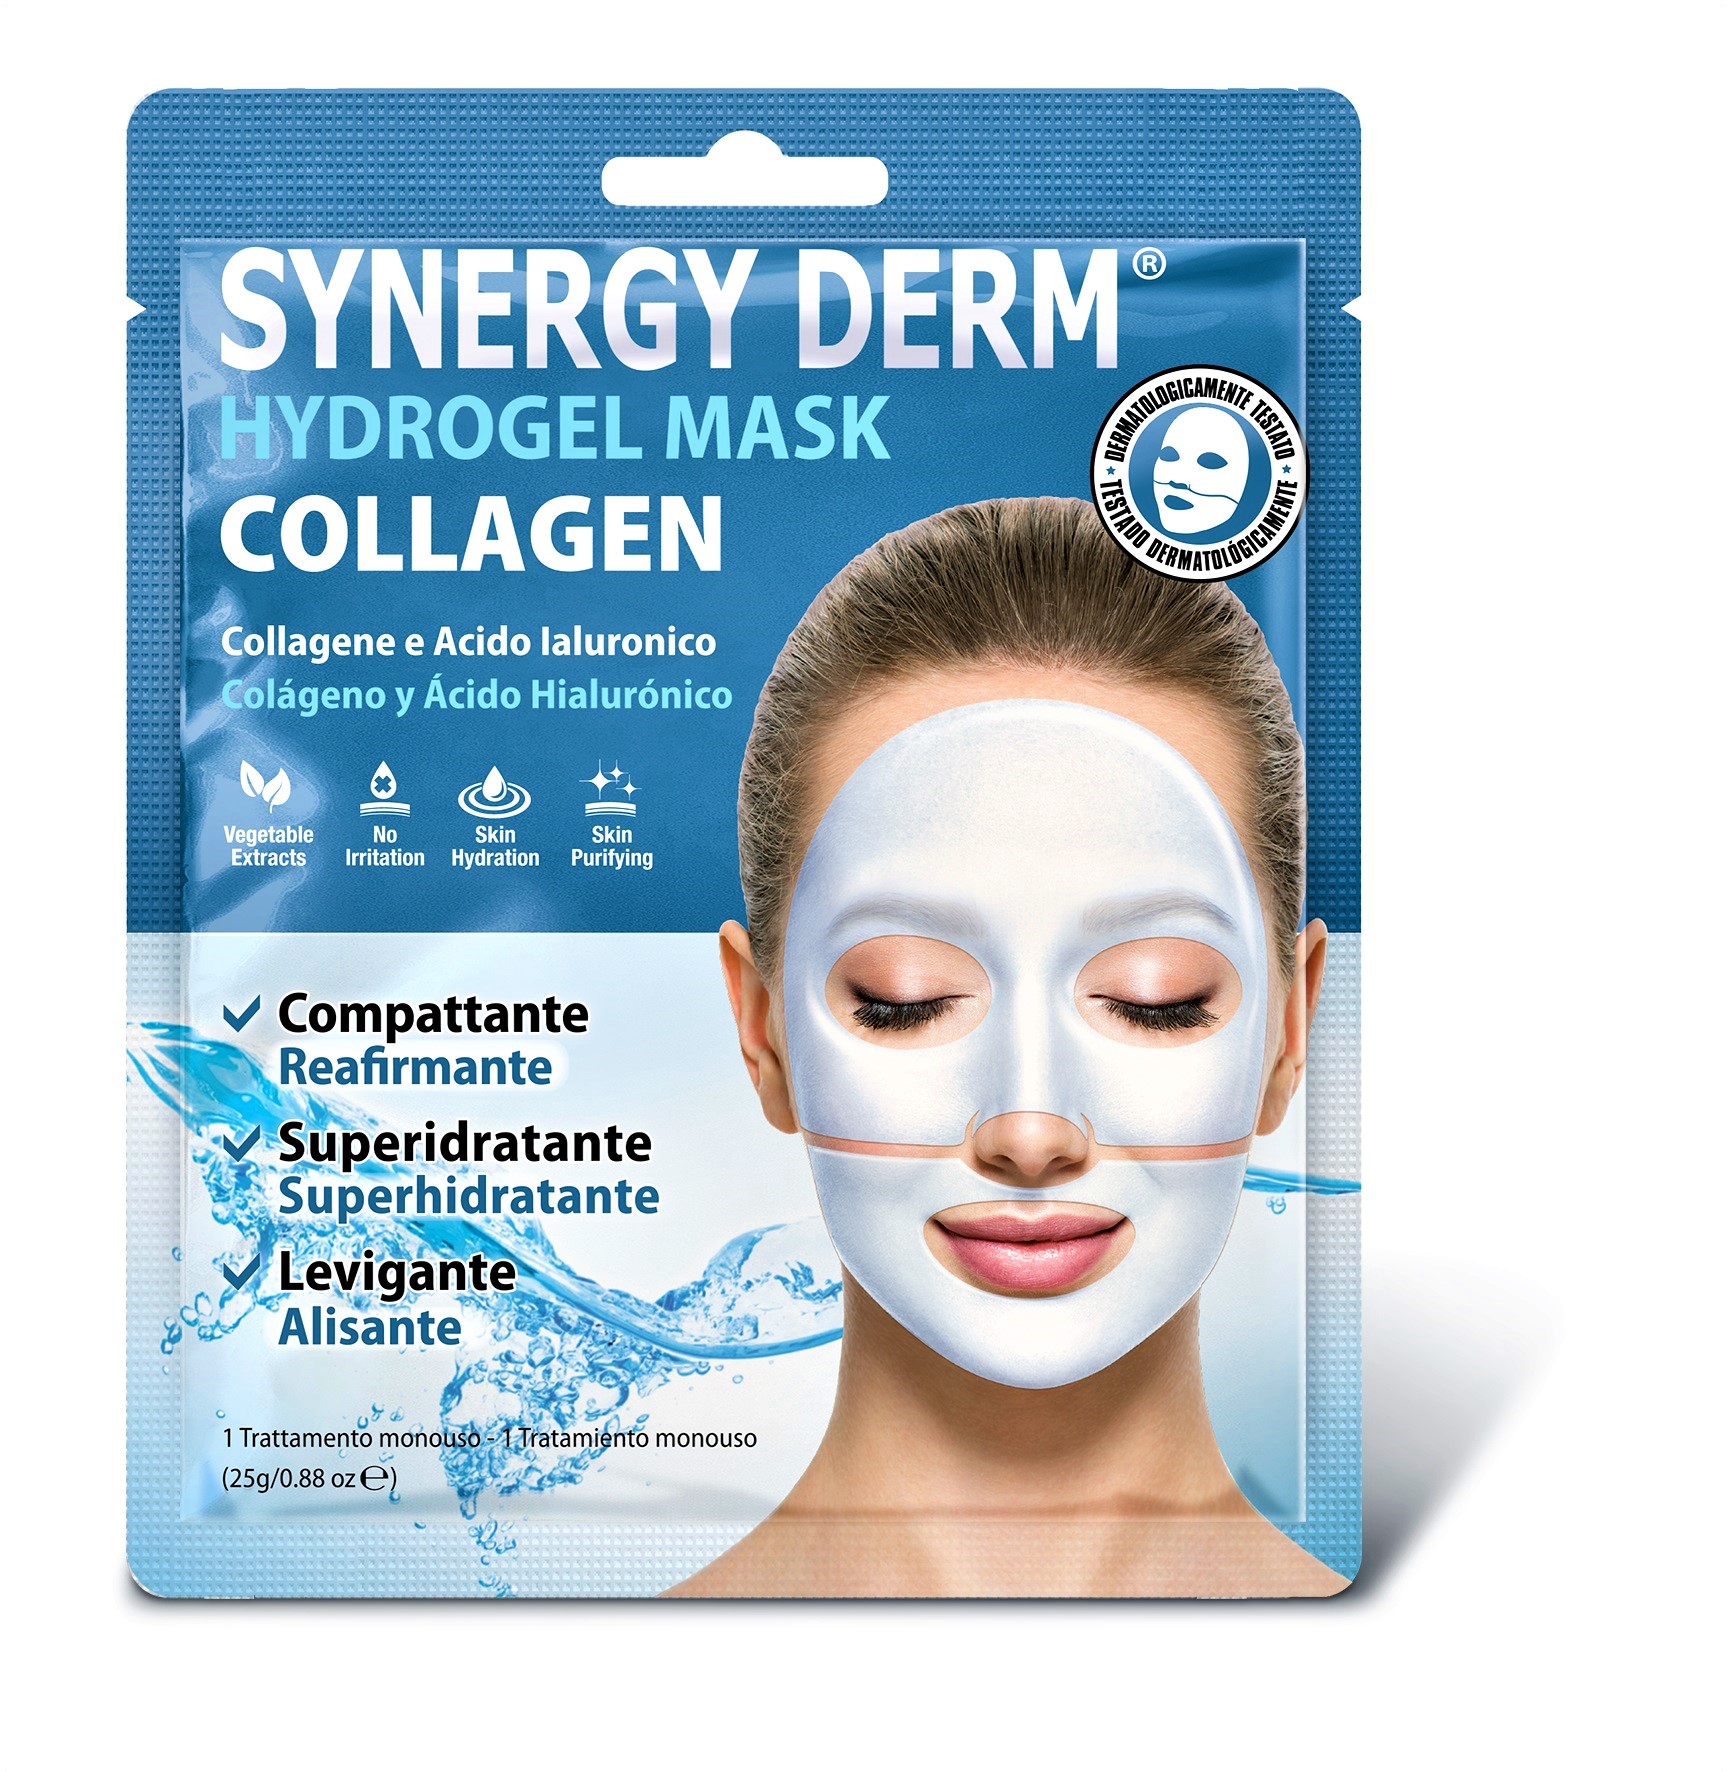 Synergy Derm Maschera Hydrogel Collagen